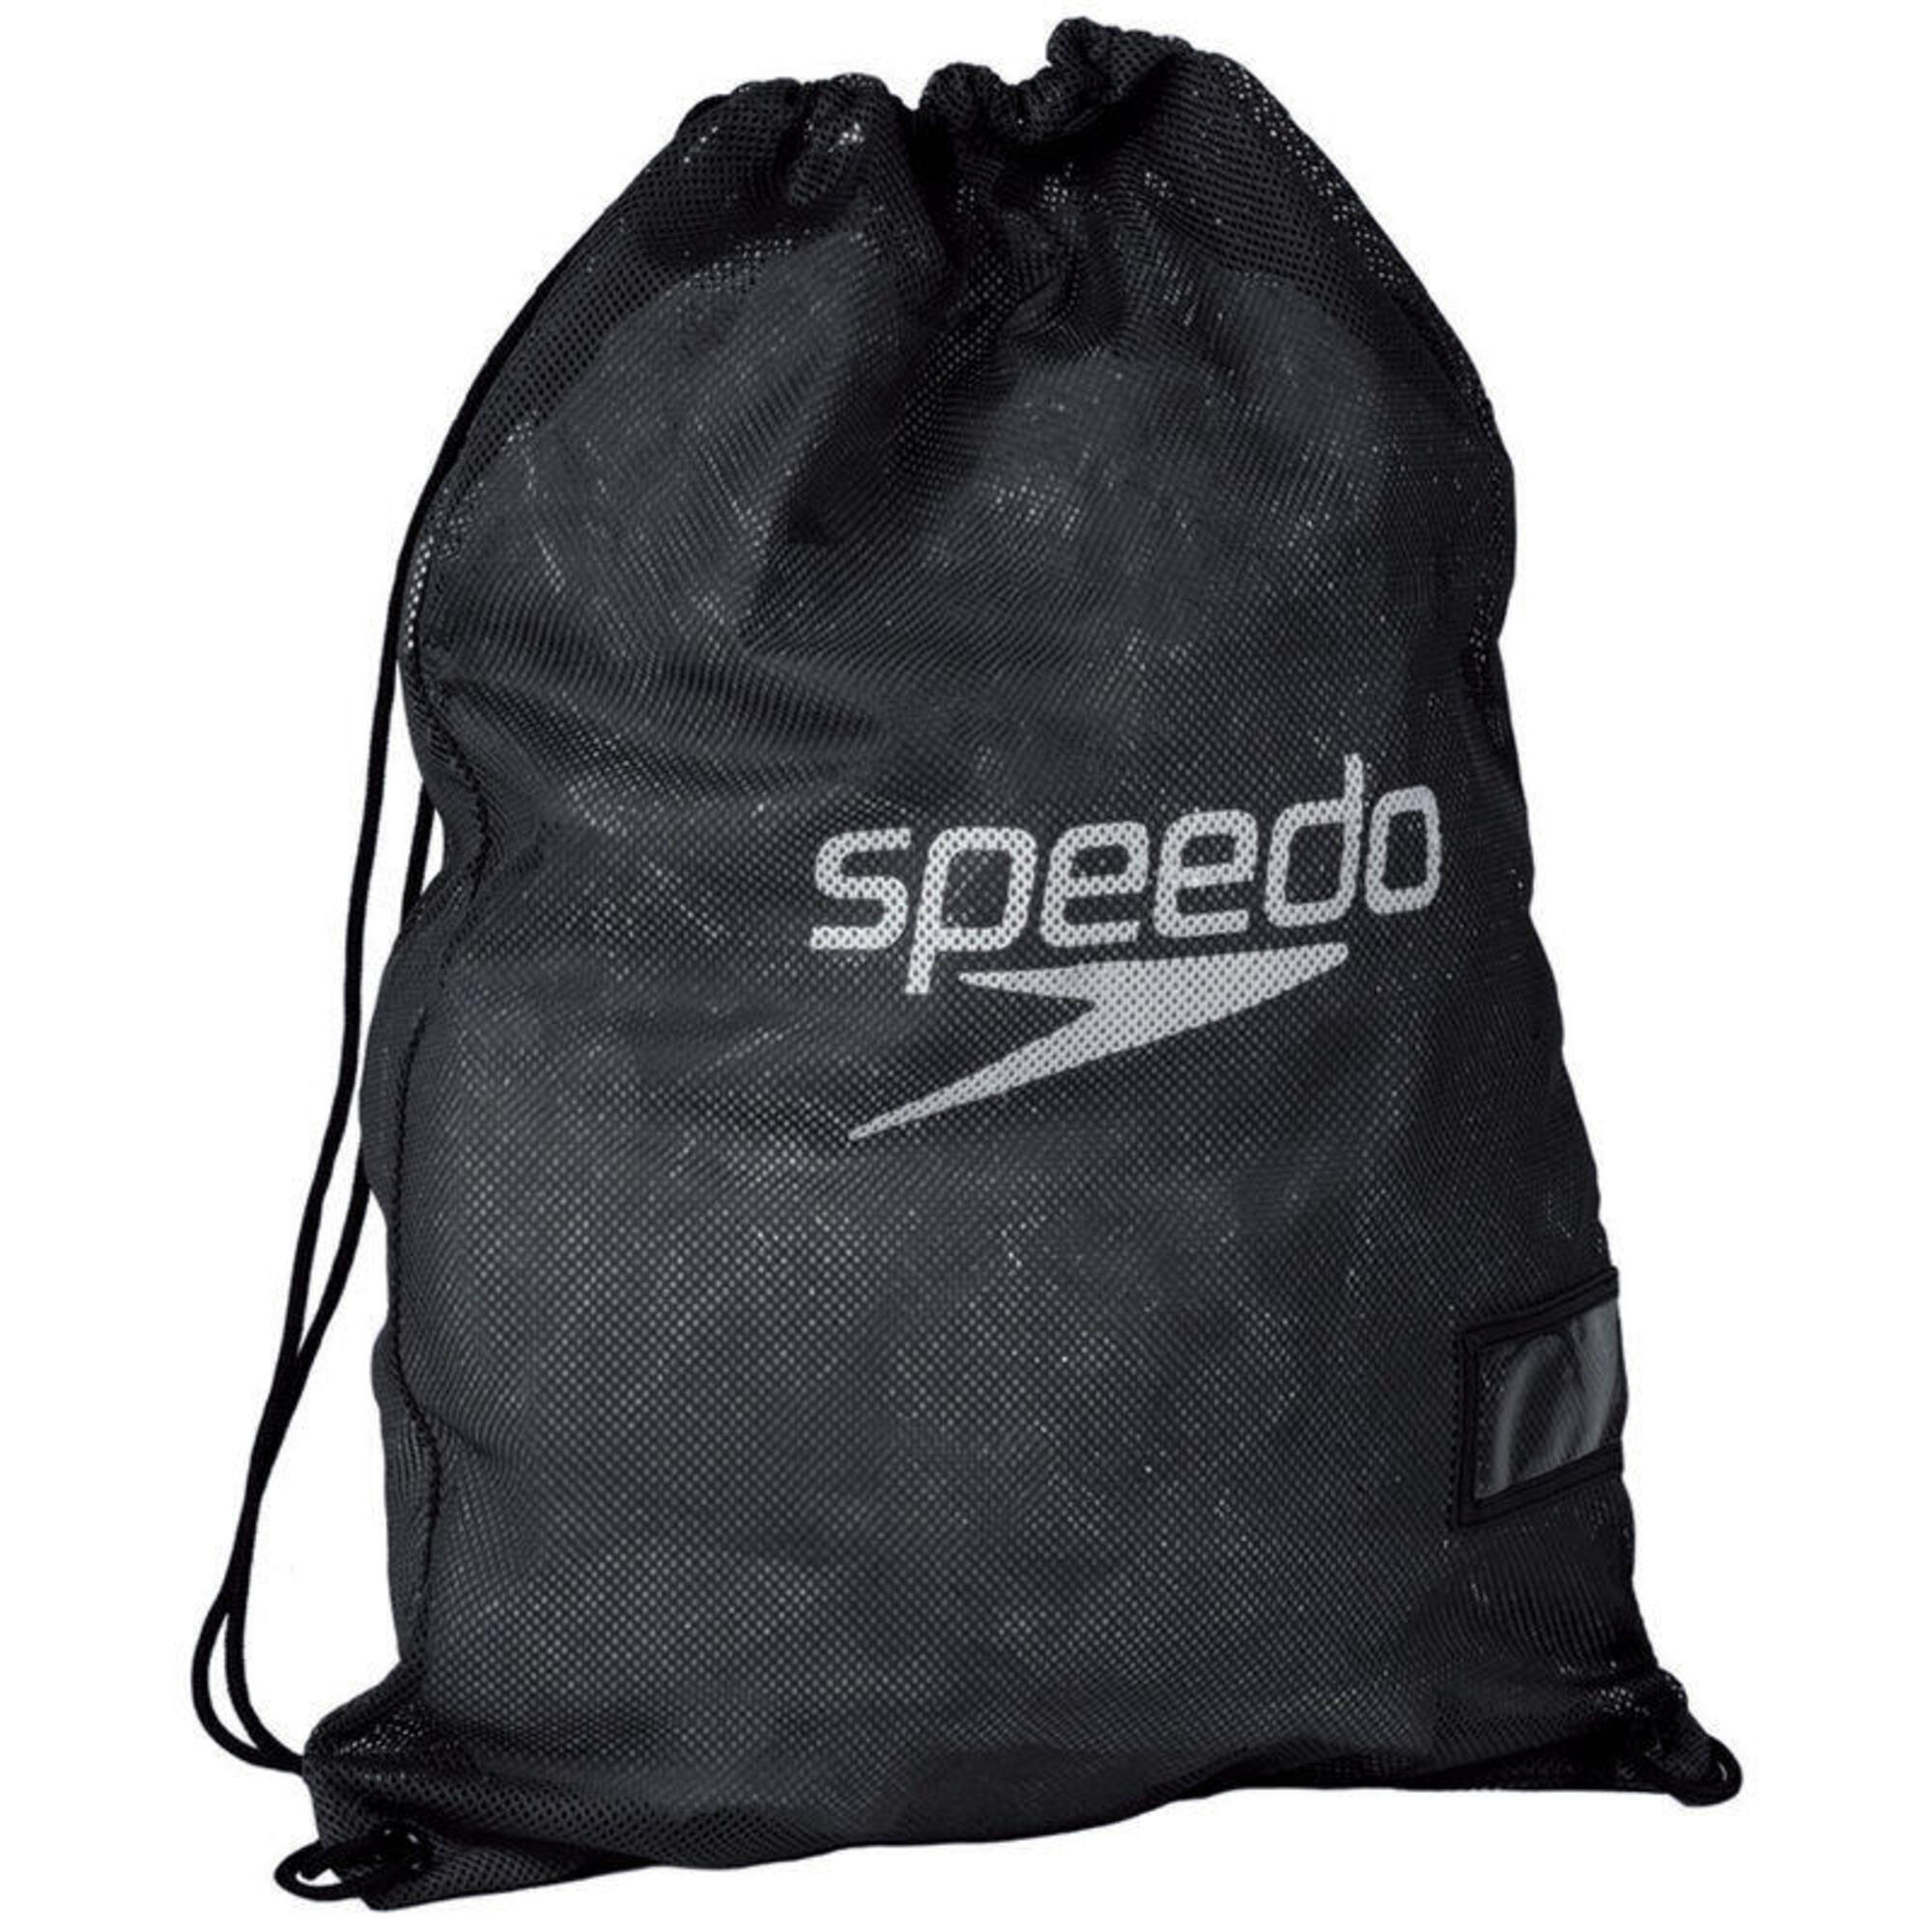 SPEEDO Speedo Equipment Mesh Wet Kit Bag - Black